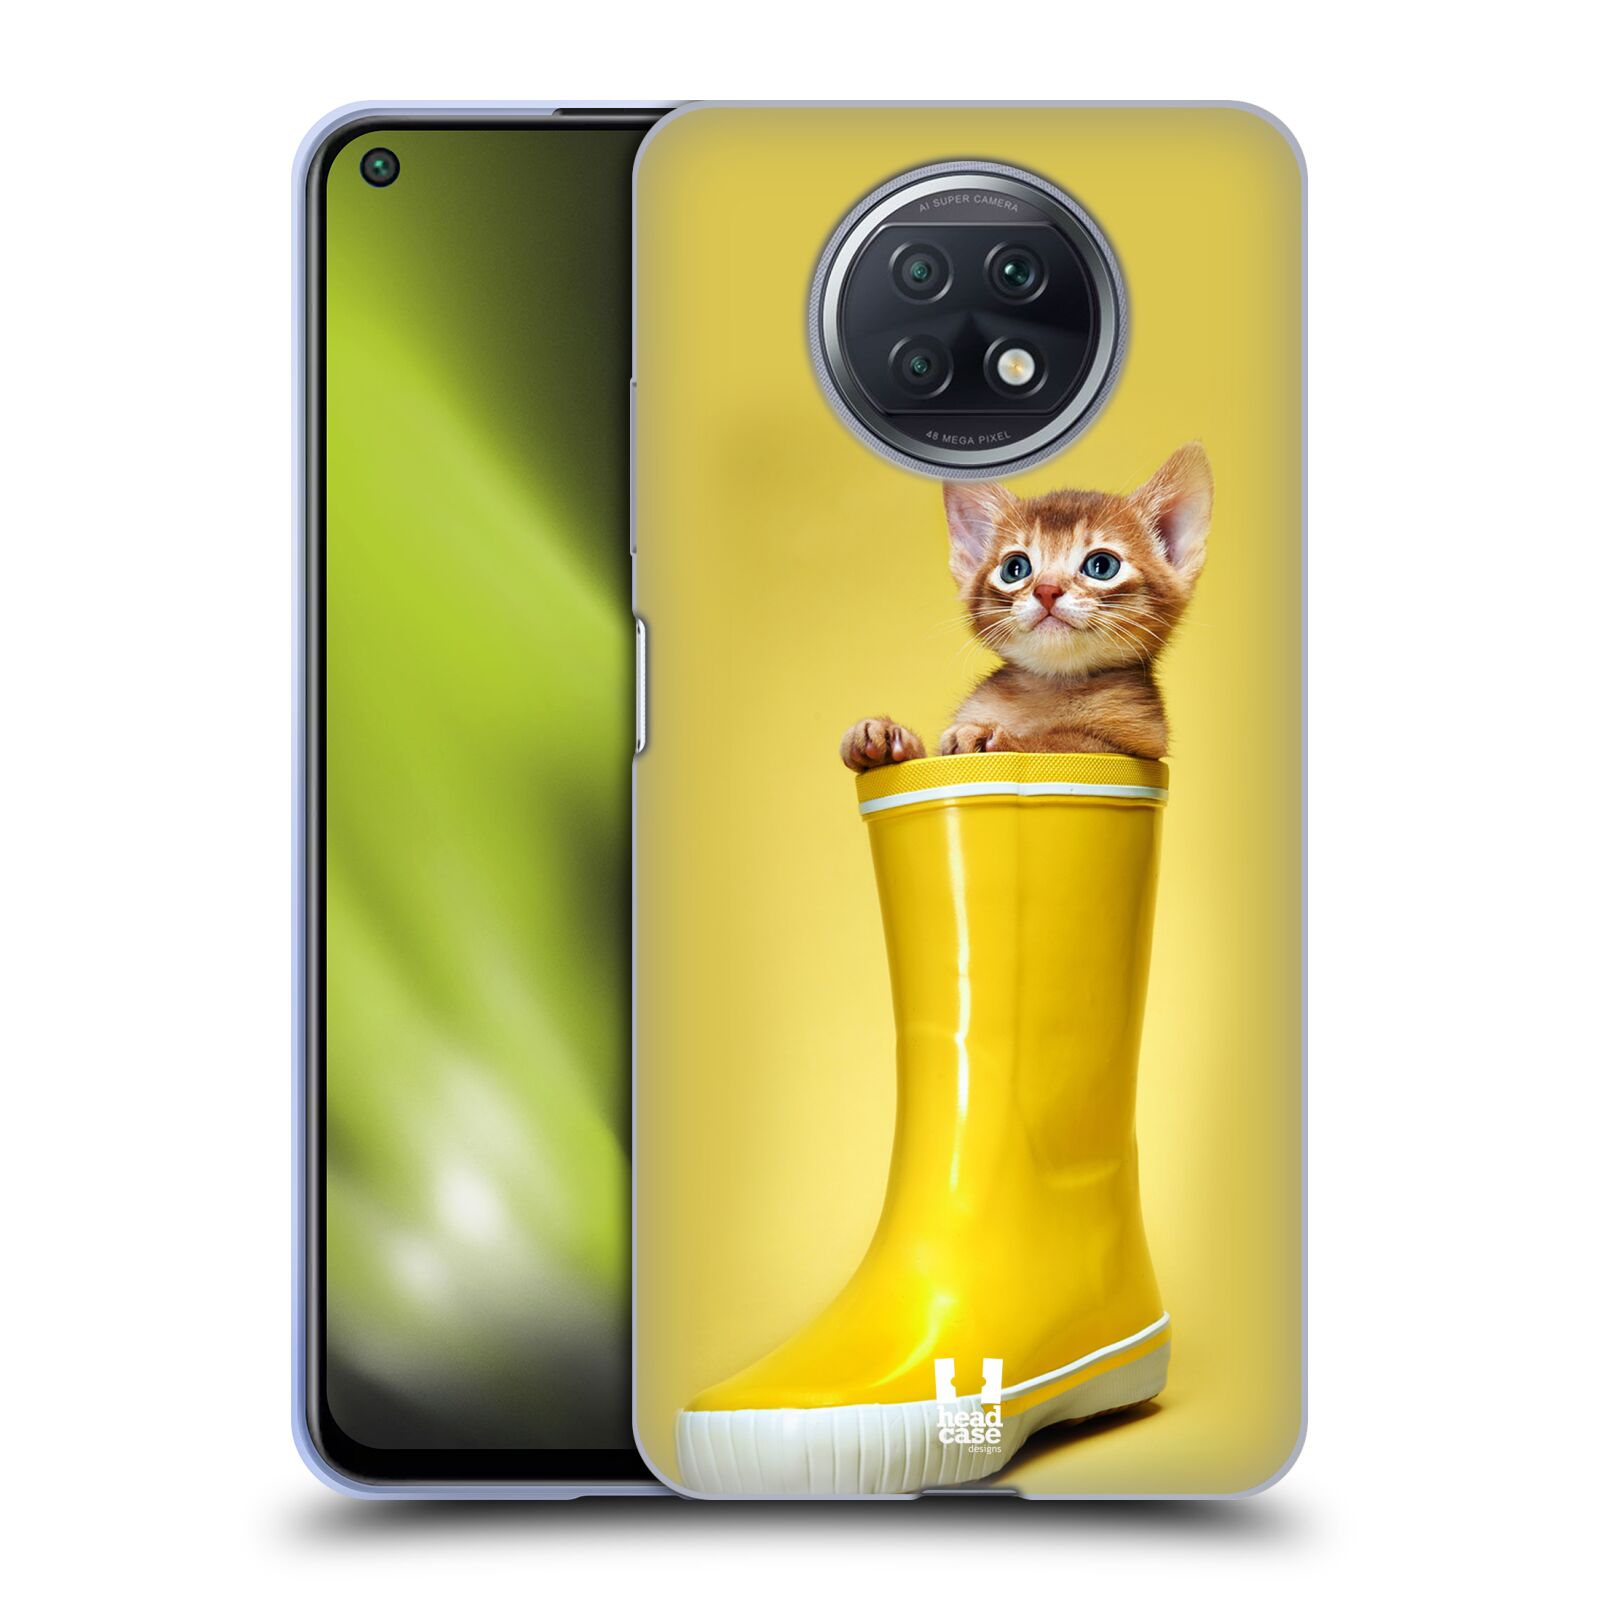 Plastový obal HEAD CASE na mobil Xiaomi Redmi Note 9T vzor Legrační zvířátka kotě v botě žlutá